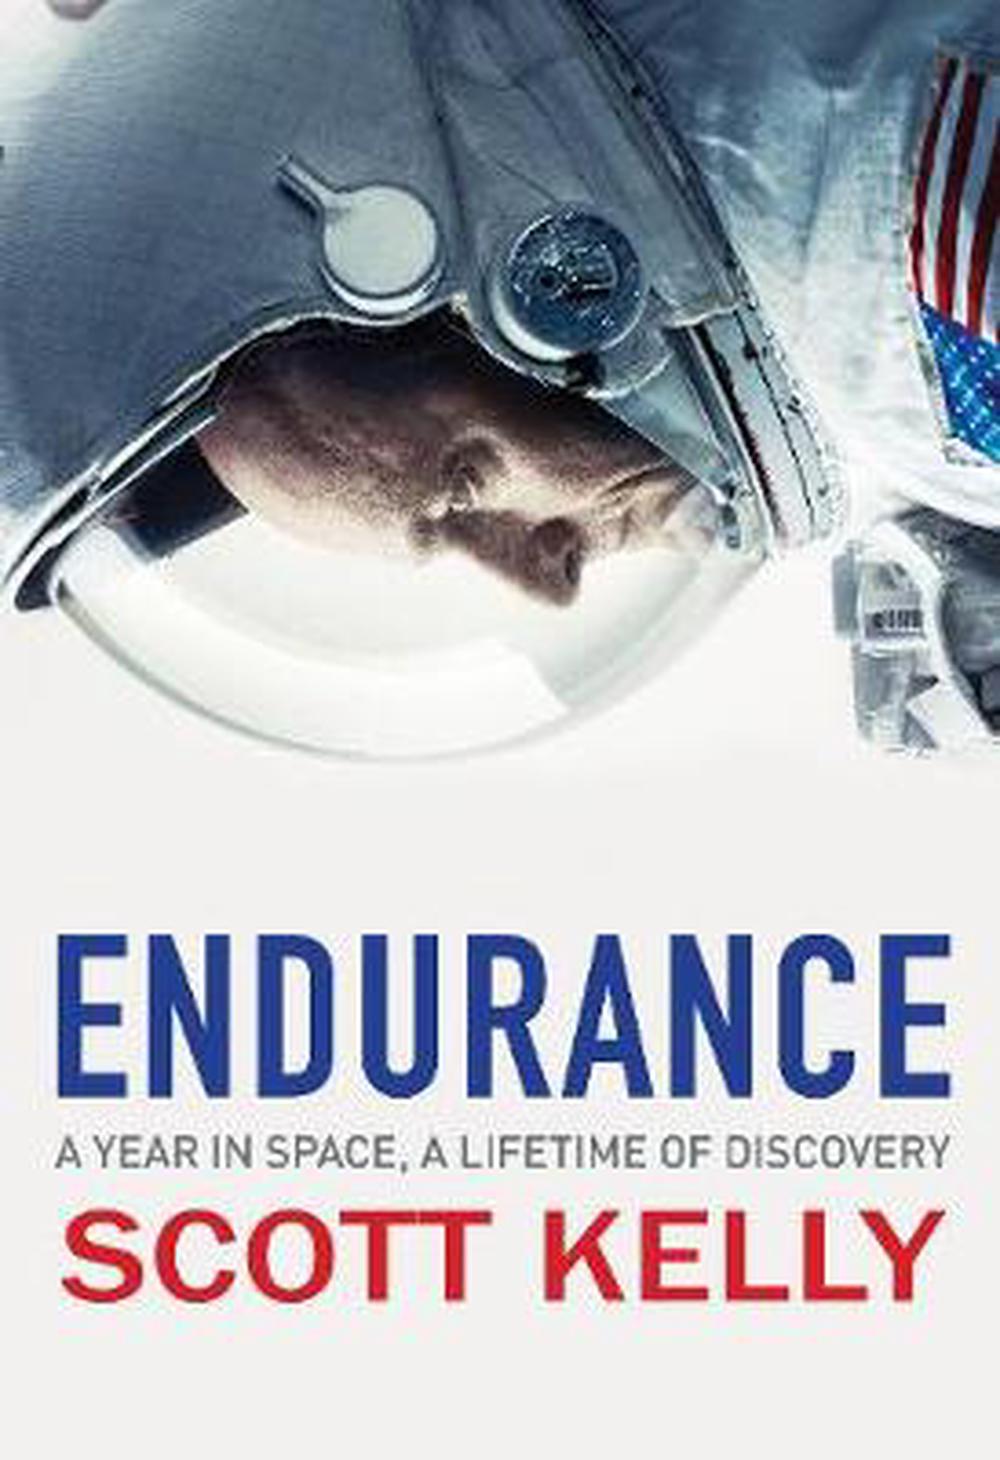 primal endurance book review